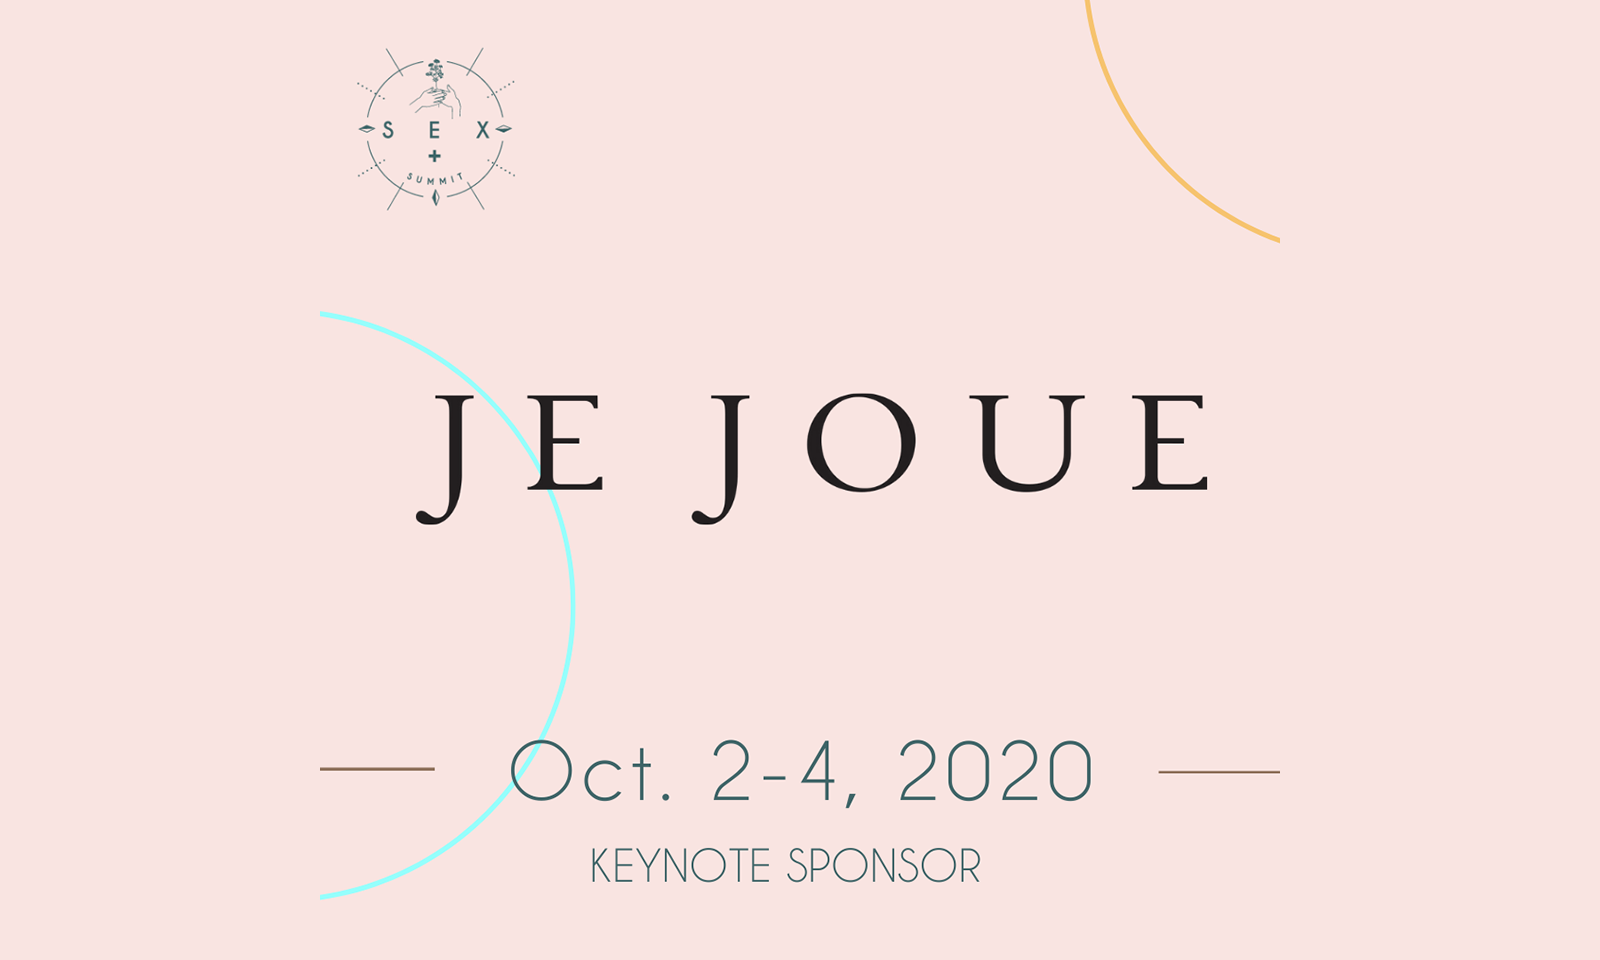 Je Joue Has Signed on as SEX+ Summit Keynote Sponsor